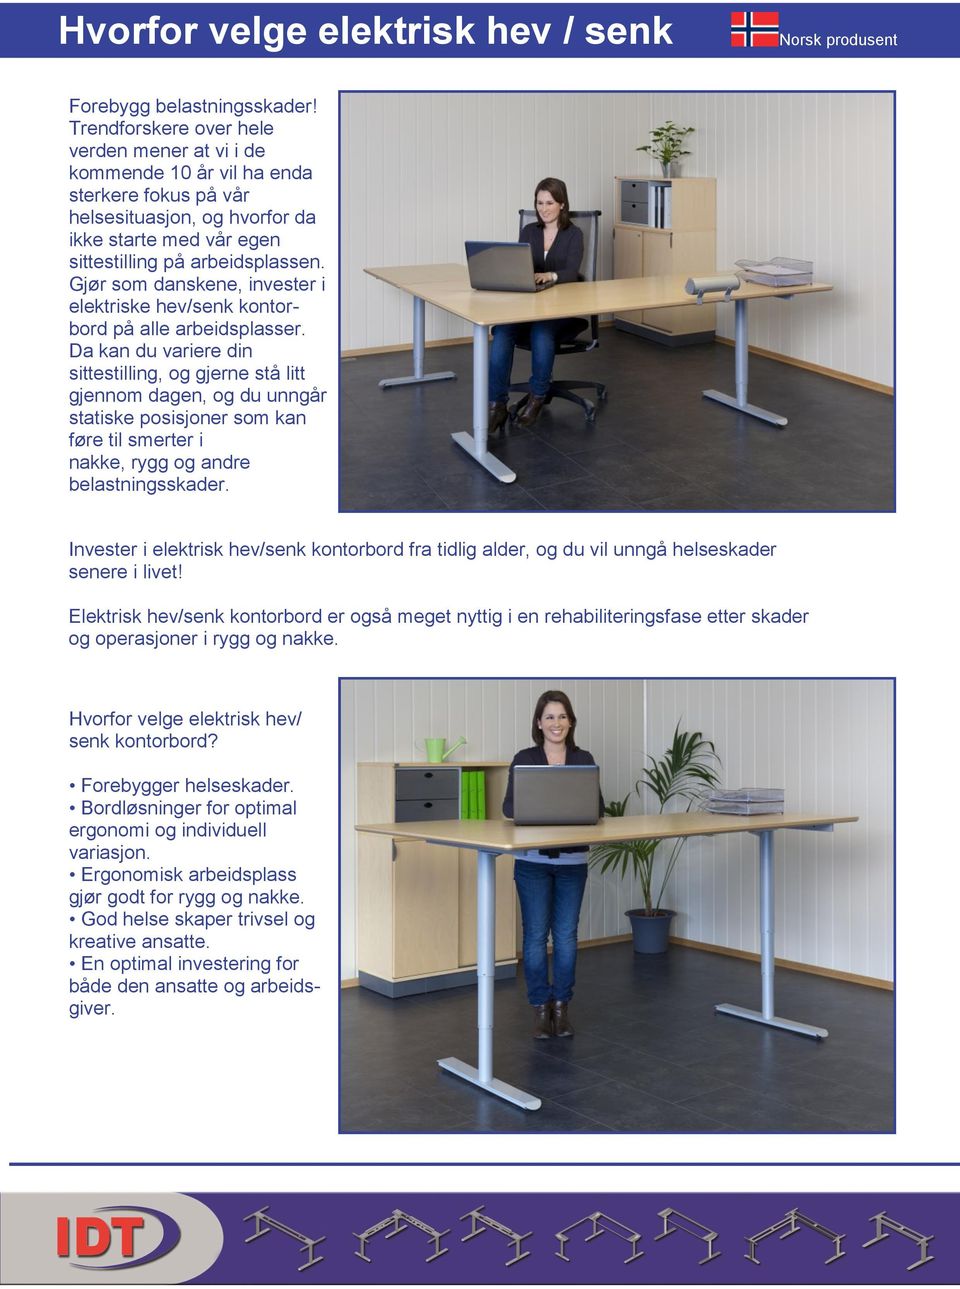 Gjør som danskene, invester i elektriske hev/senk kontorbord på alle arbeidsplasser.